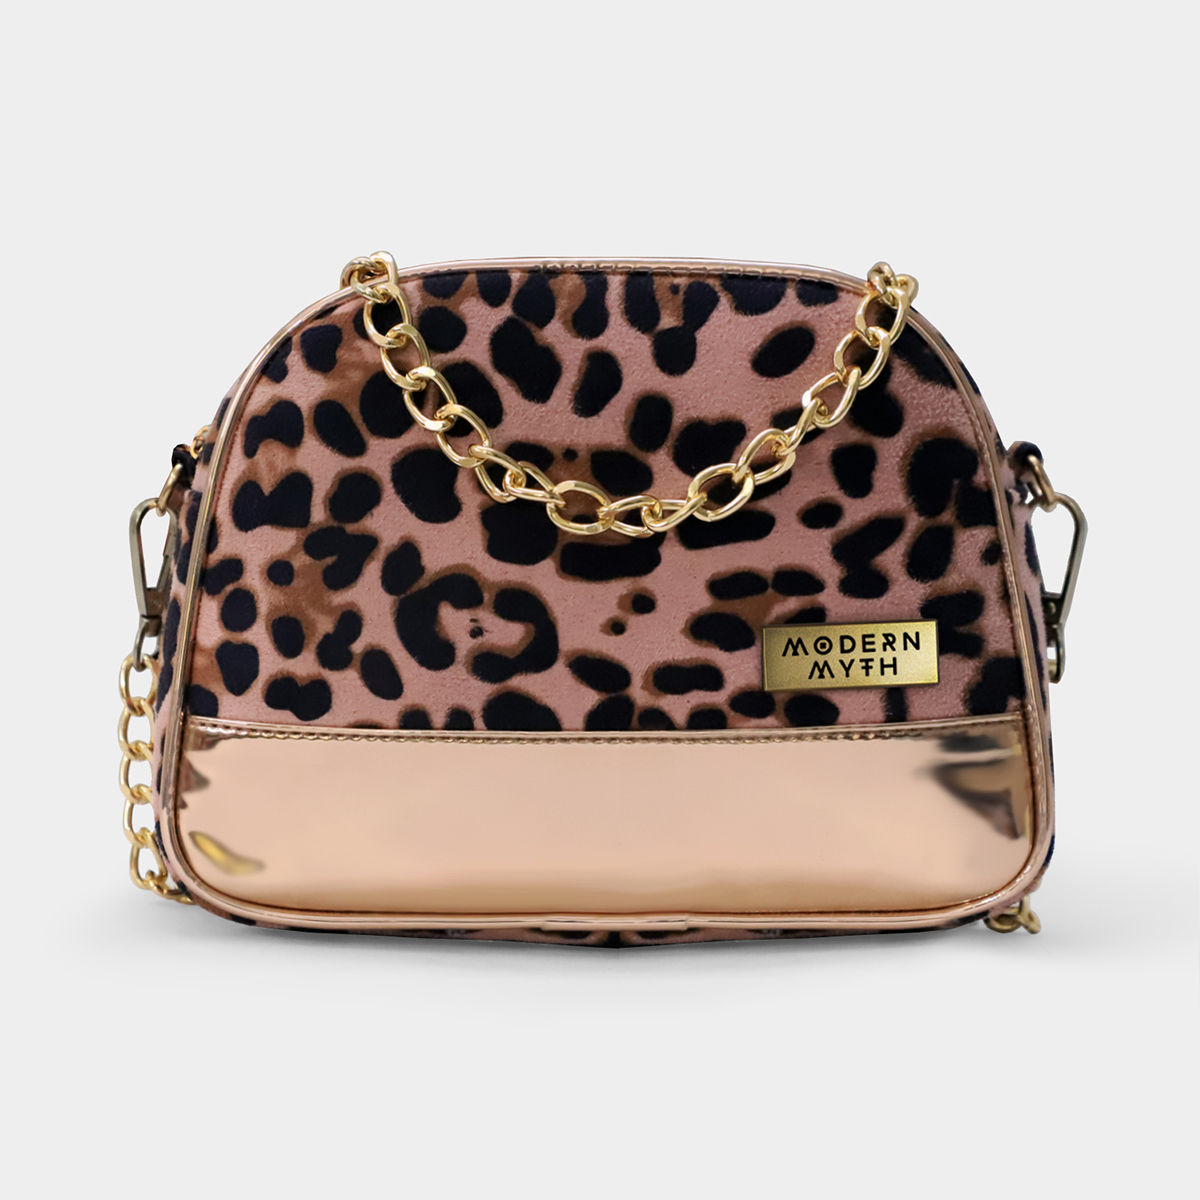 Cheetah Print Hello Kitty Purse /tote bag super... - Depop